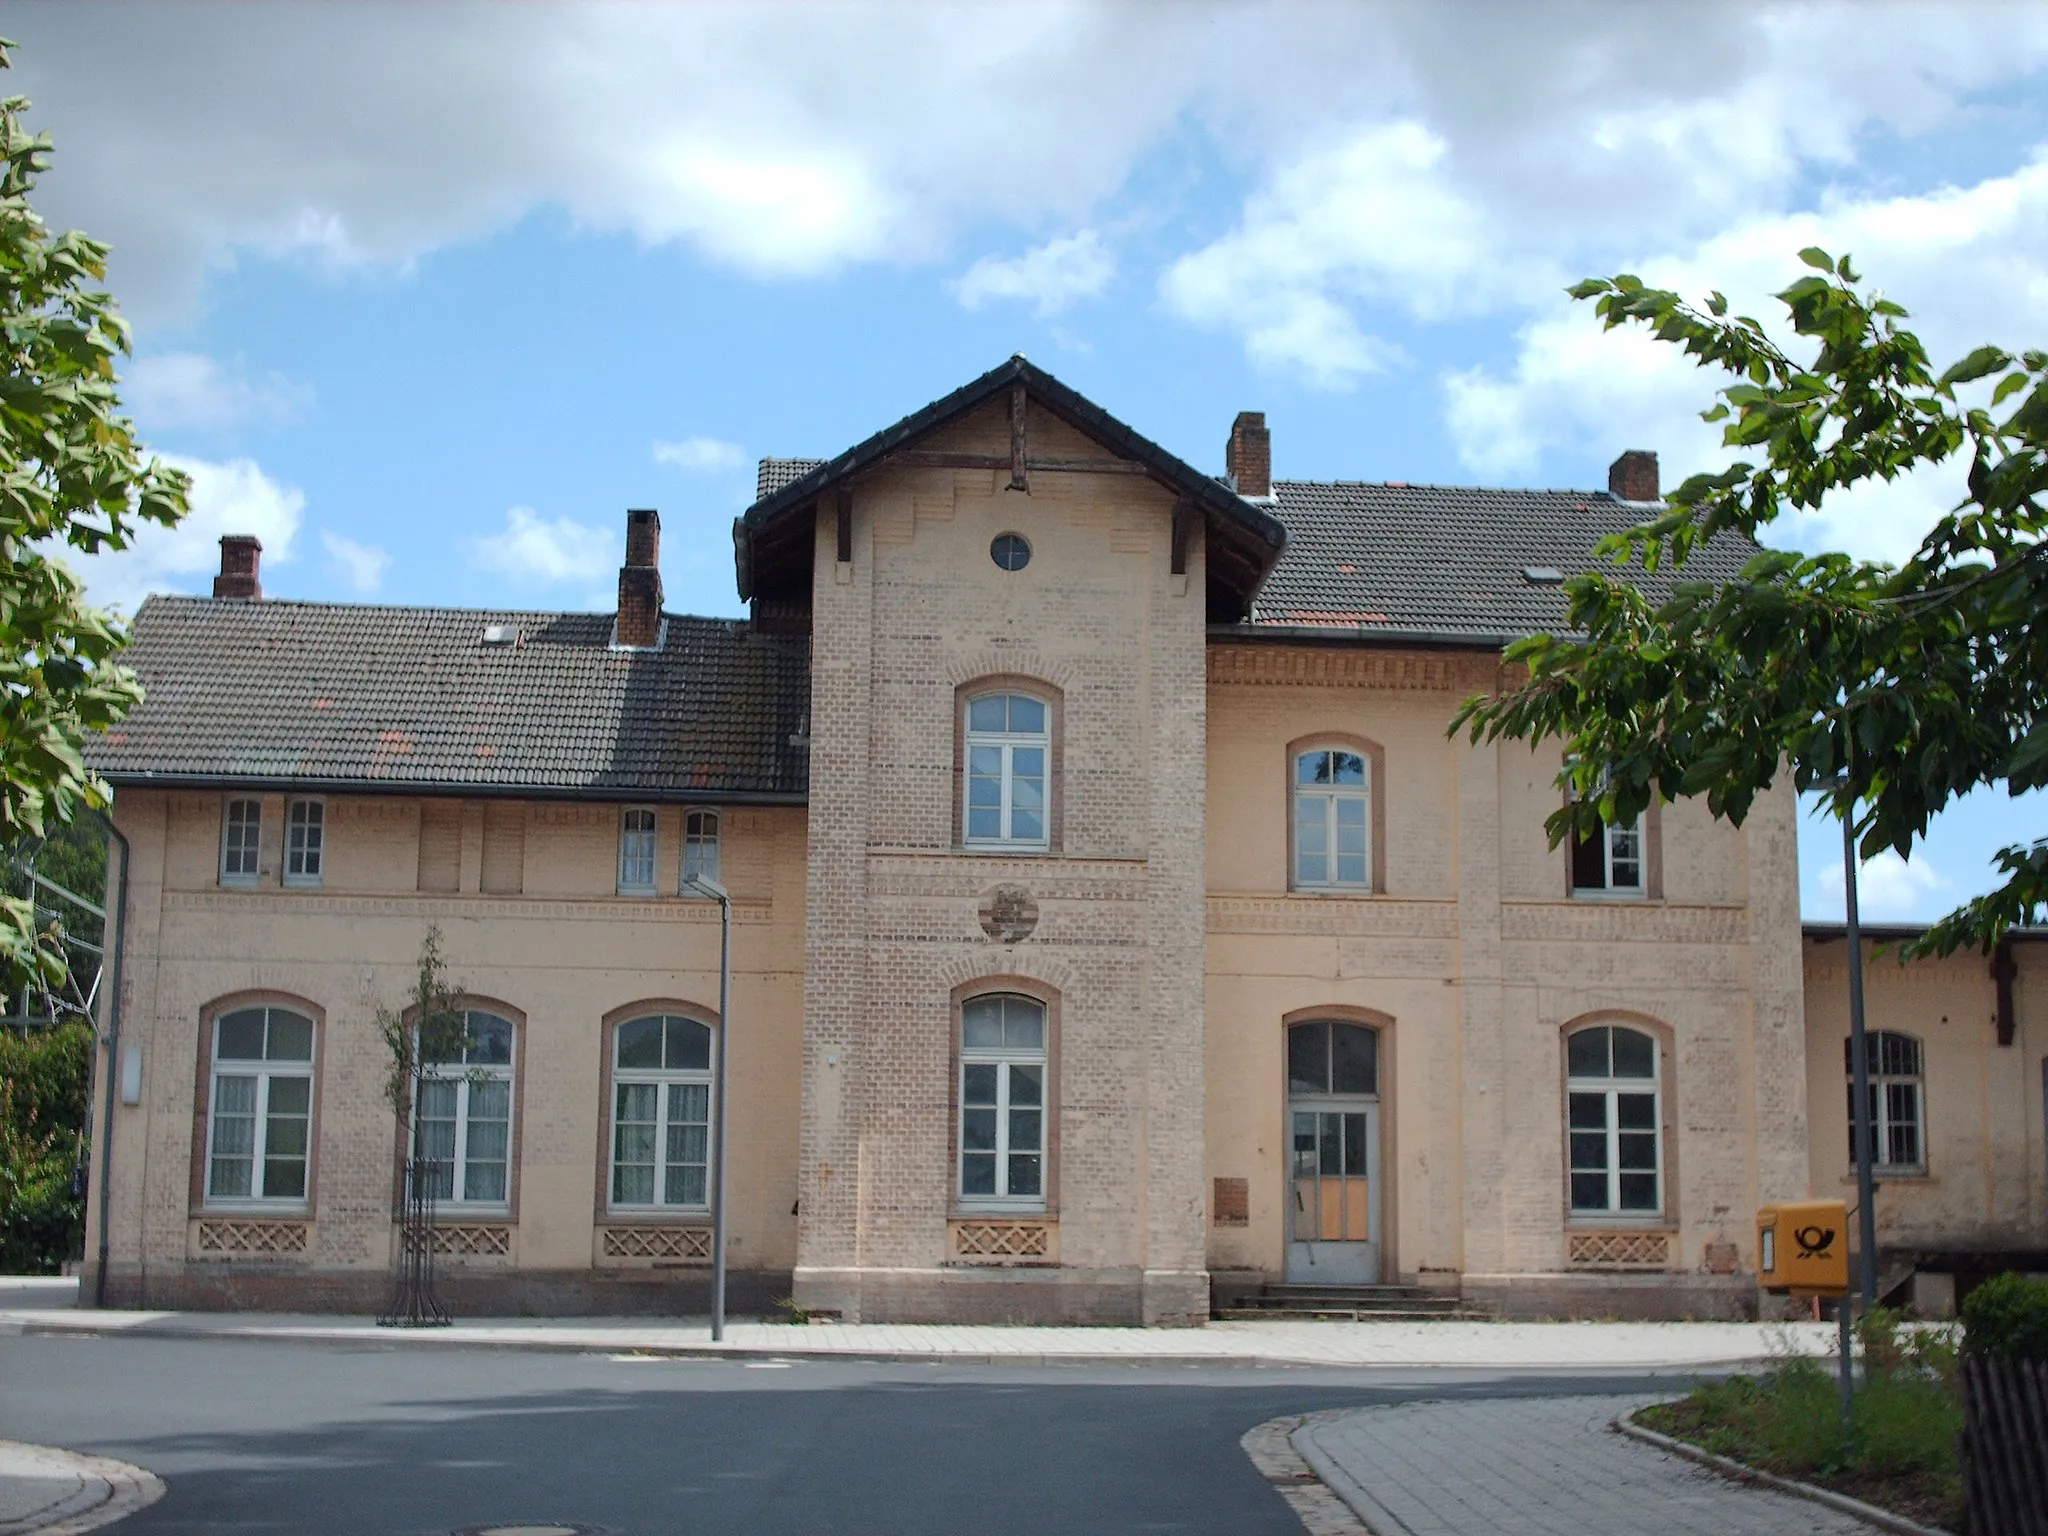 Photo showing: Lügde station, Lügde, Germany